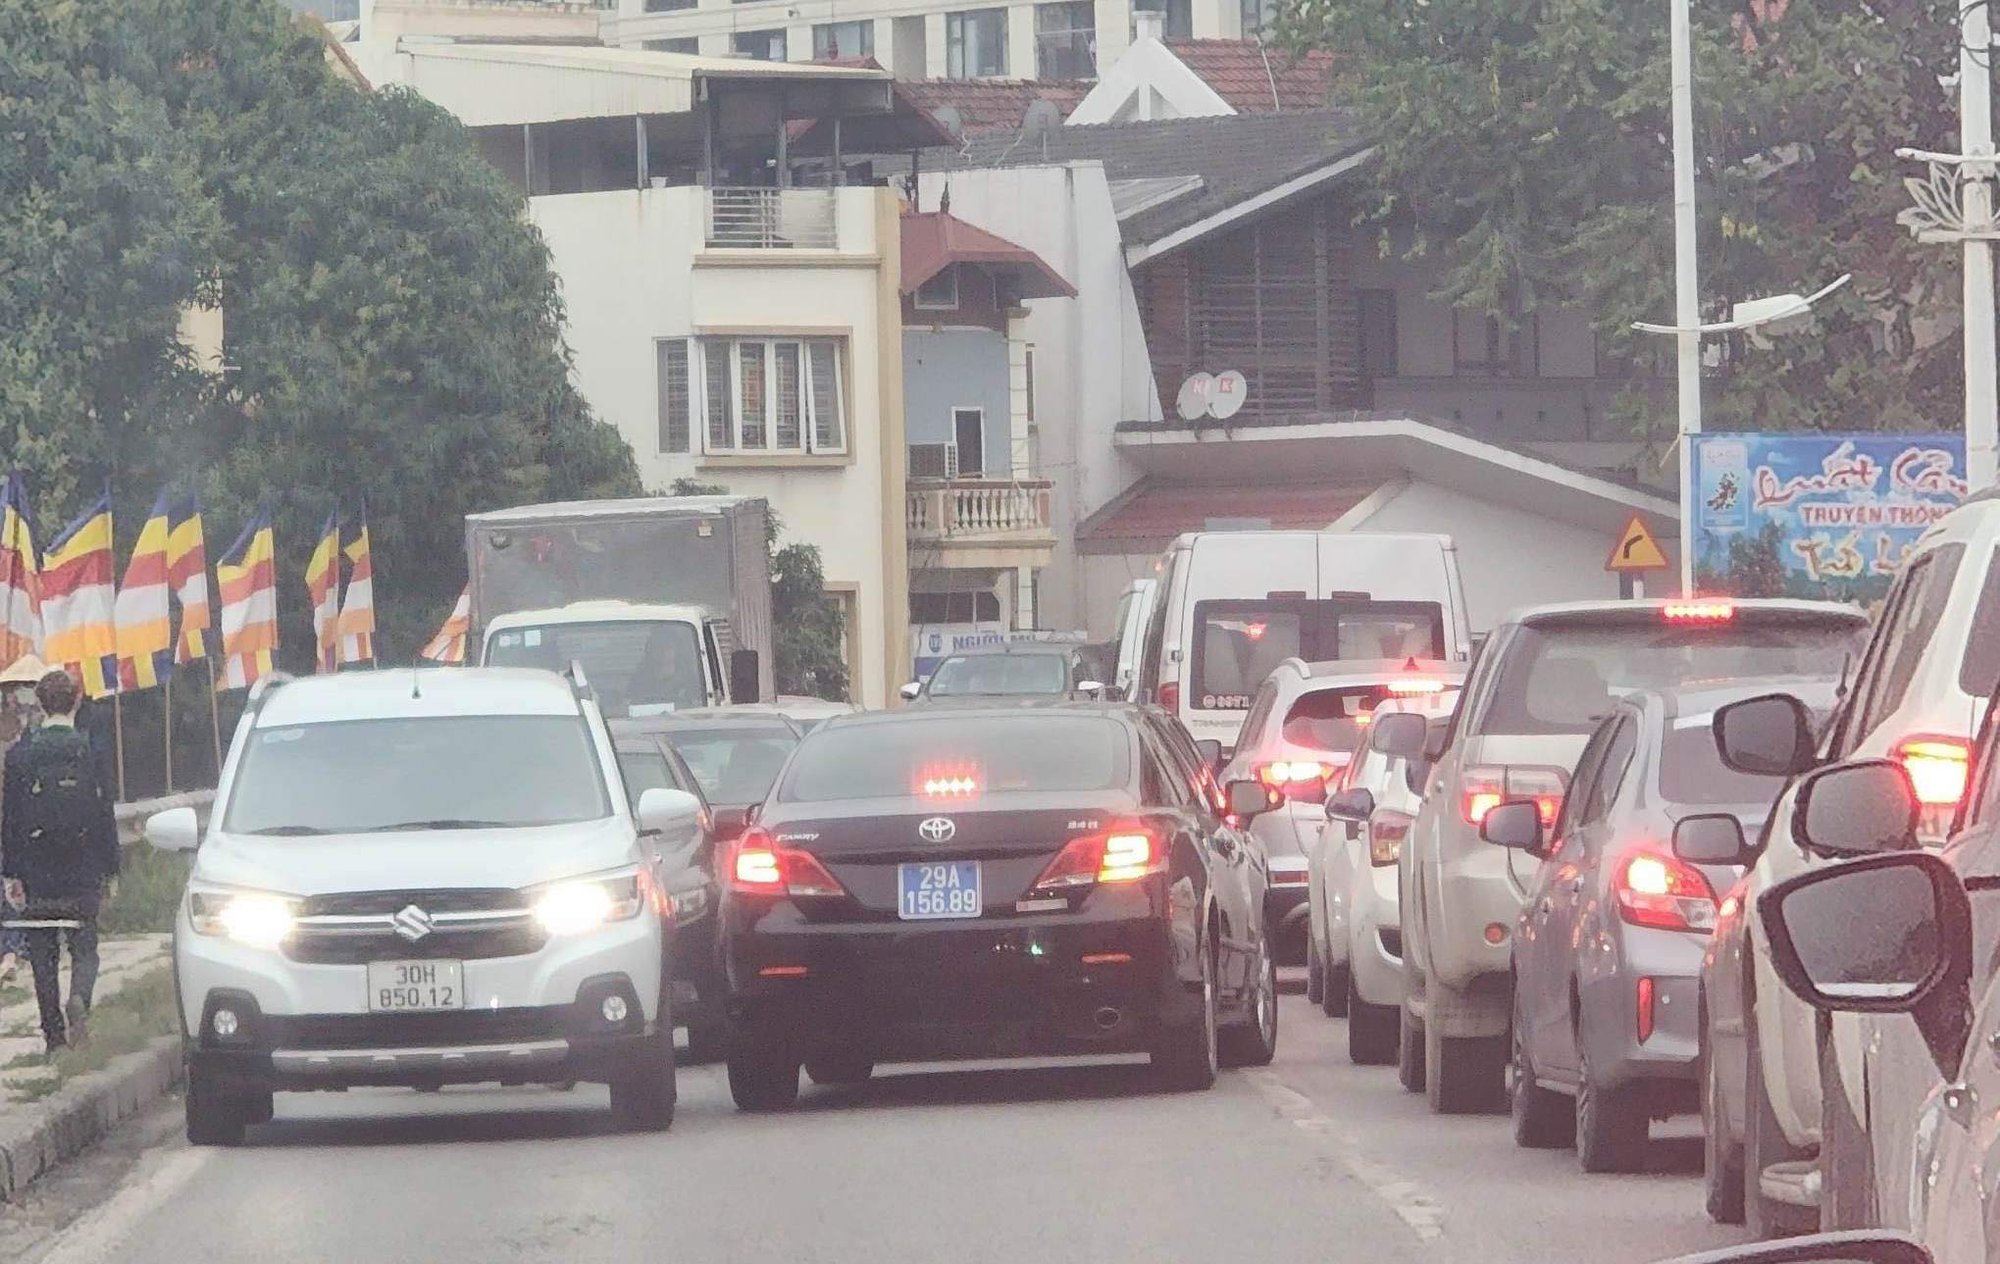 Hà Nội: Xác minh lái xe ô tô biển xanh vi phạm giao thông trên đường Âu Cơ để xử lý - Ảnh 1.